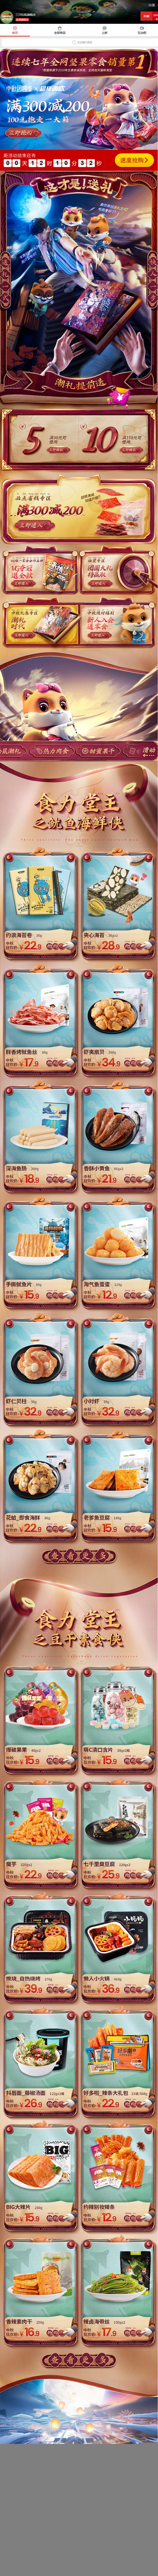 中秋节预售 手机无线端食品店铺首页设计 ...